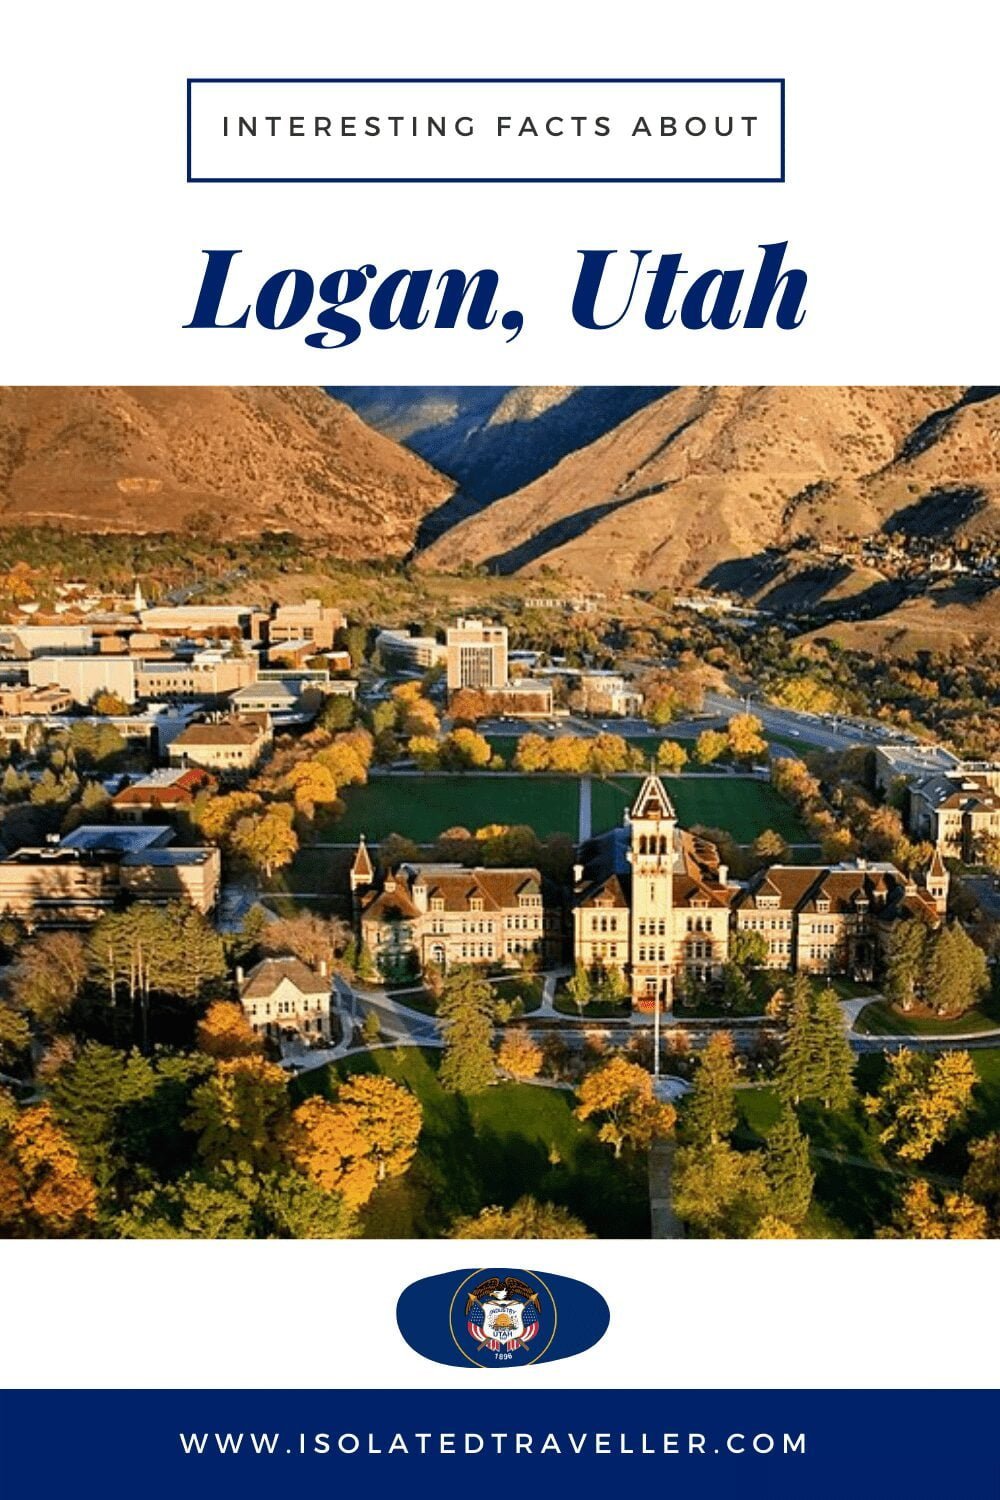 Facts About Logan, Utah